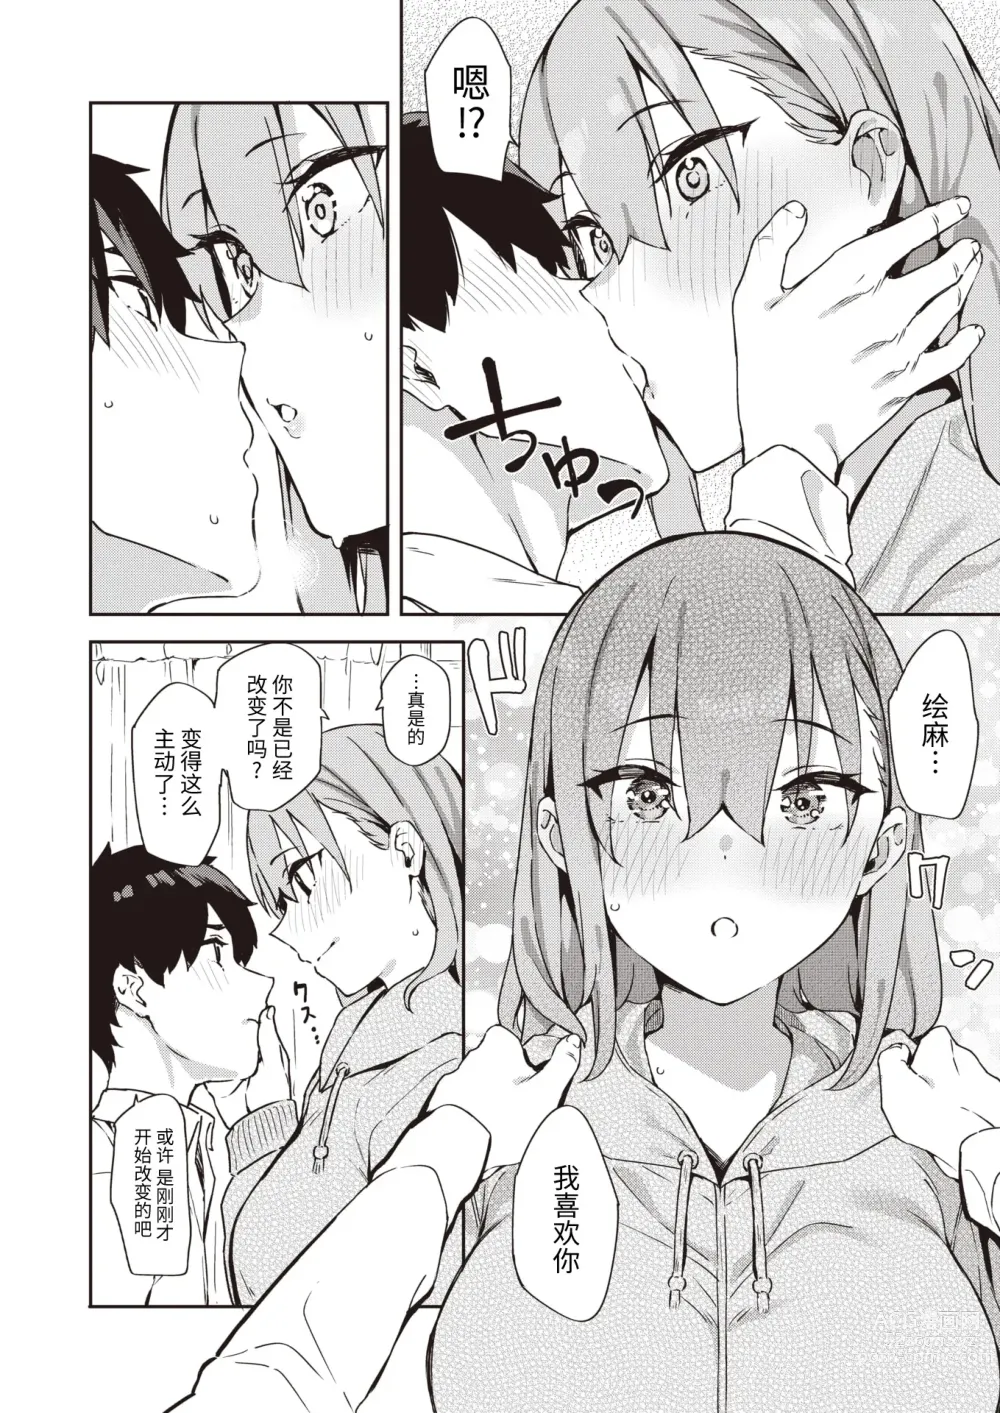 Page 11 of manga Itto o Oikakete